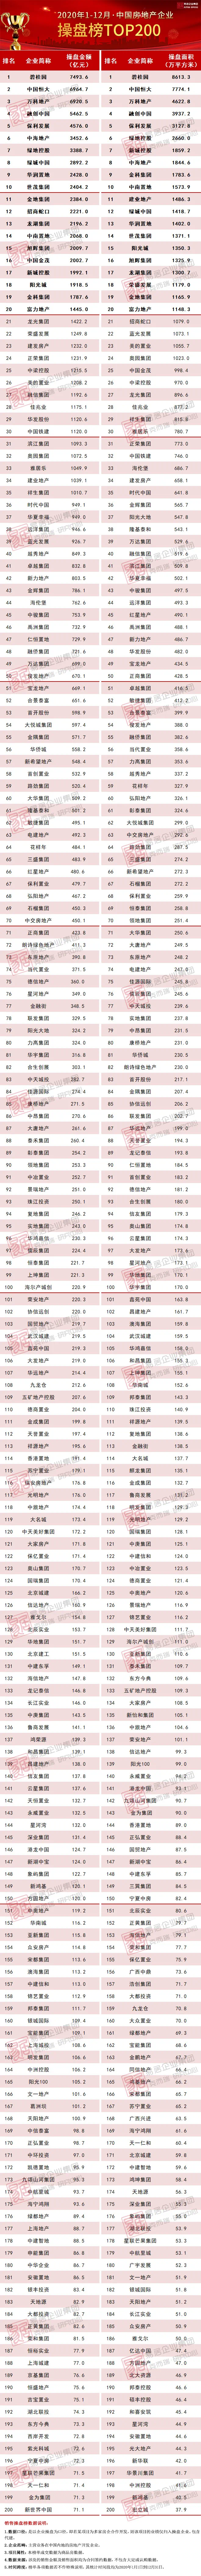 2020年中国房地产企业销售TOP200排行榜